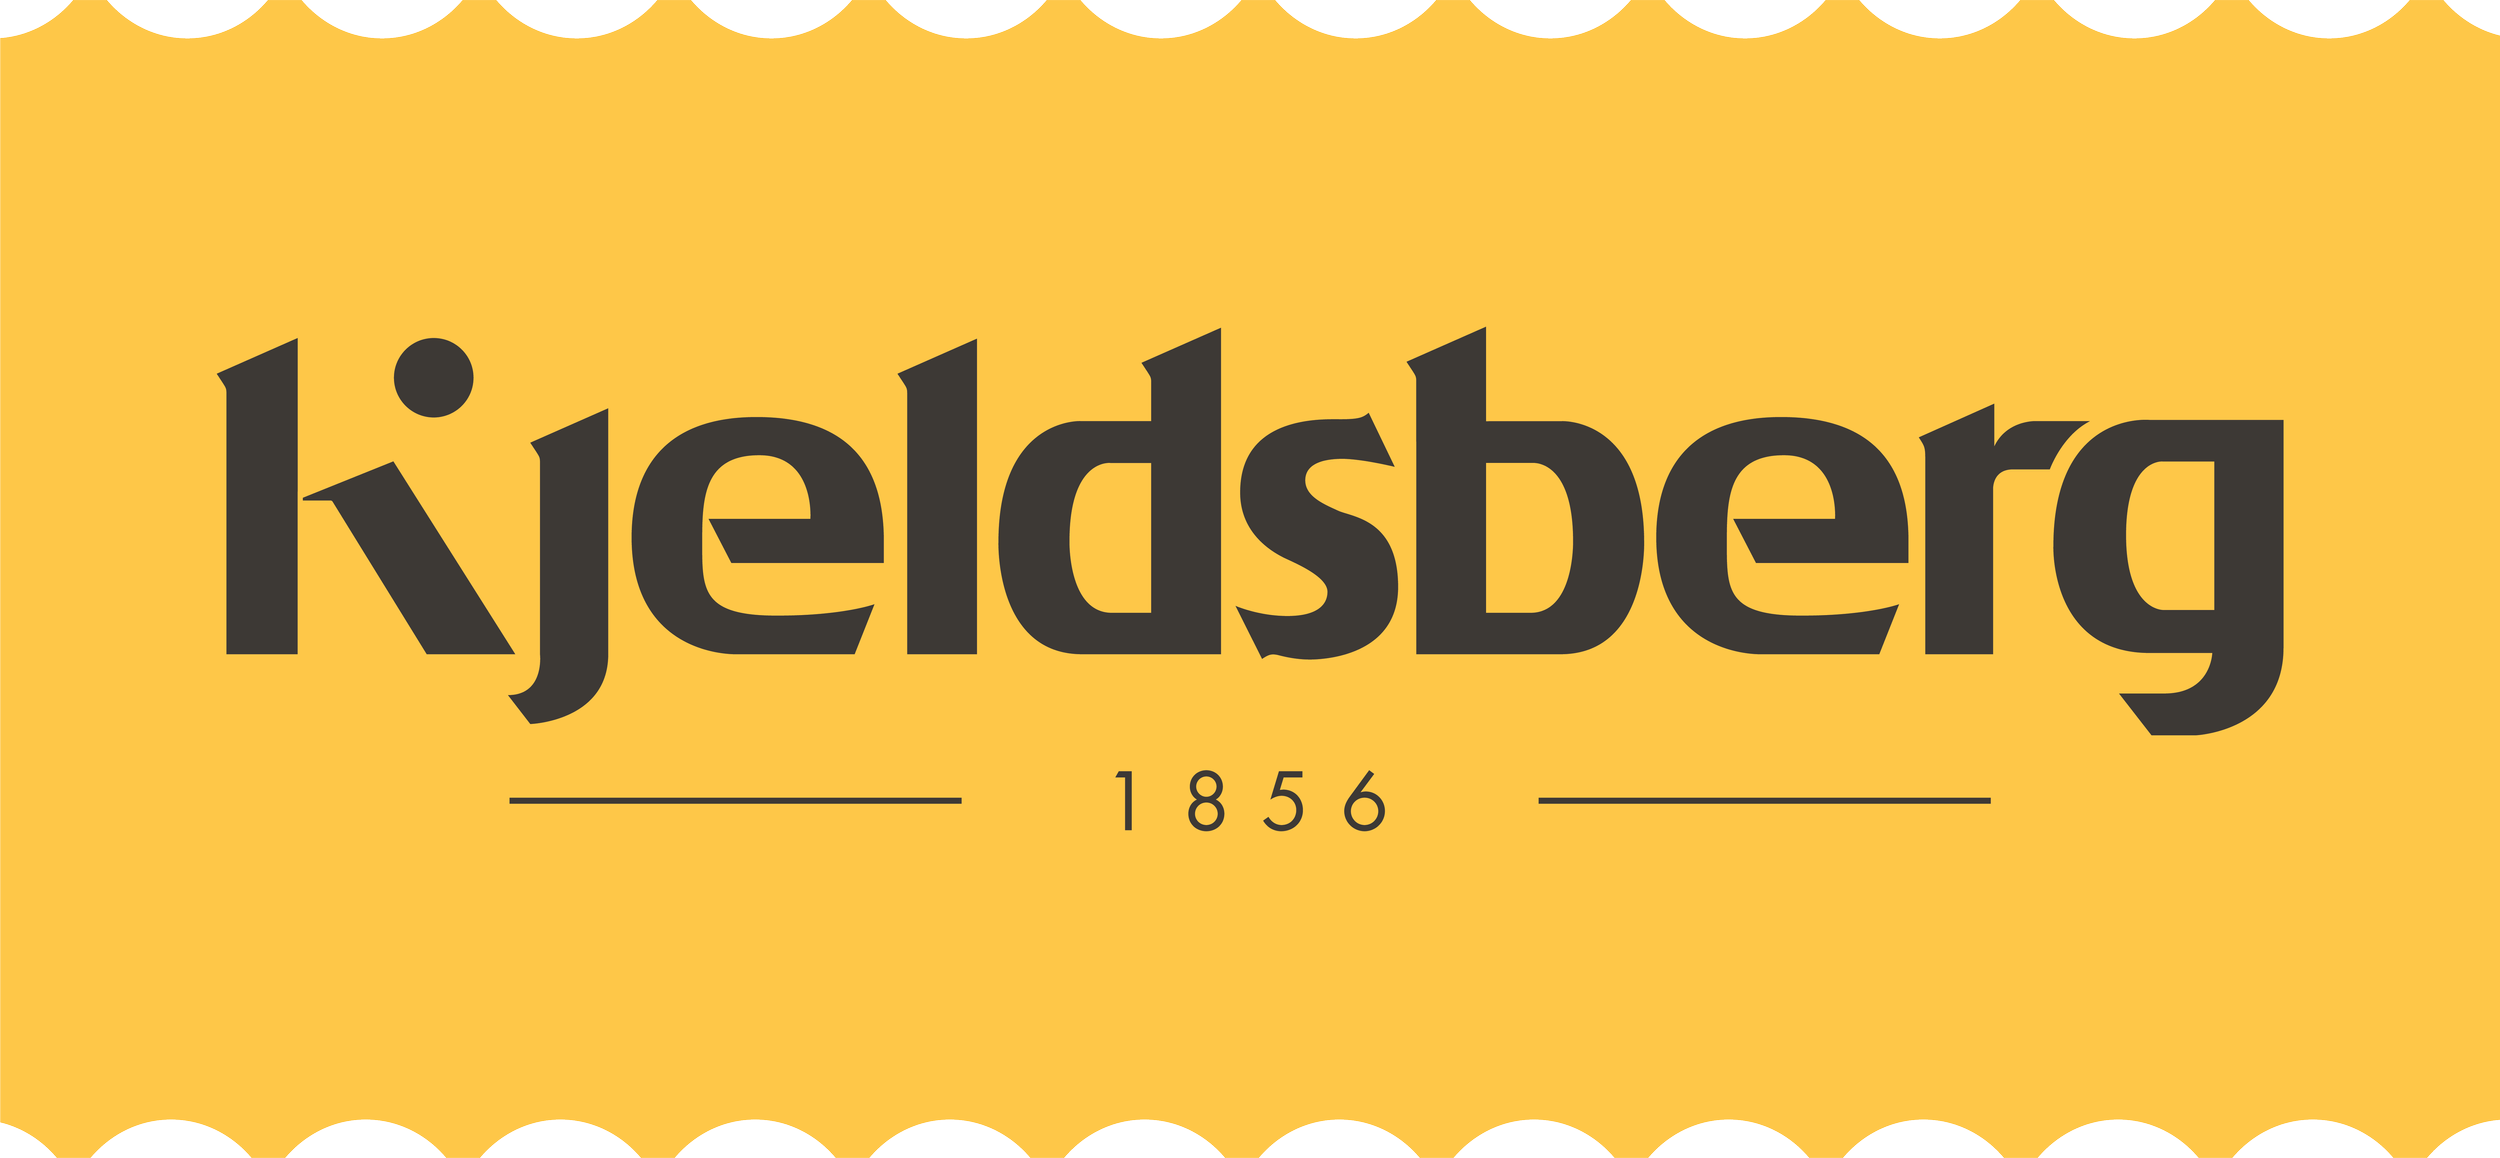 Tag Kjeldsberg Logo 1856 Pantone 1225[38].png